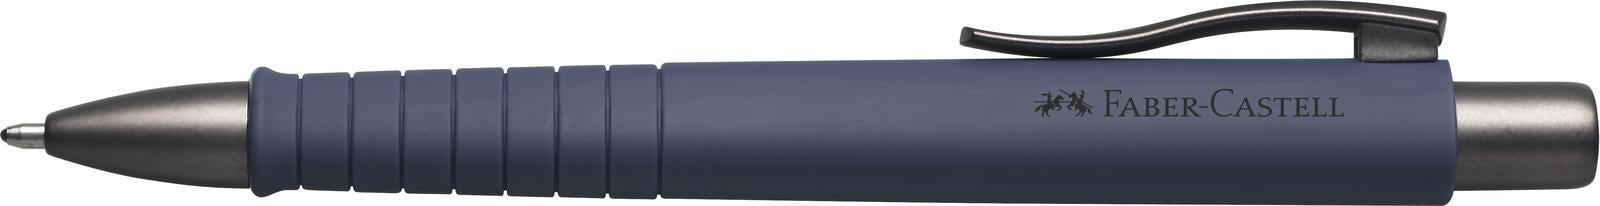 Faber-Castell: Ballpoint Pen Poly Ball - Urban Navy Blue